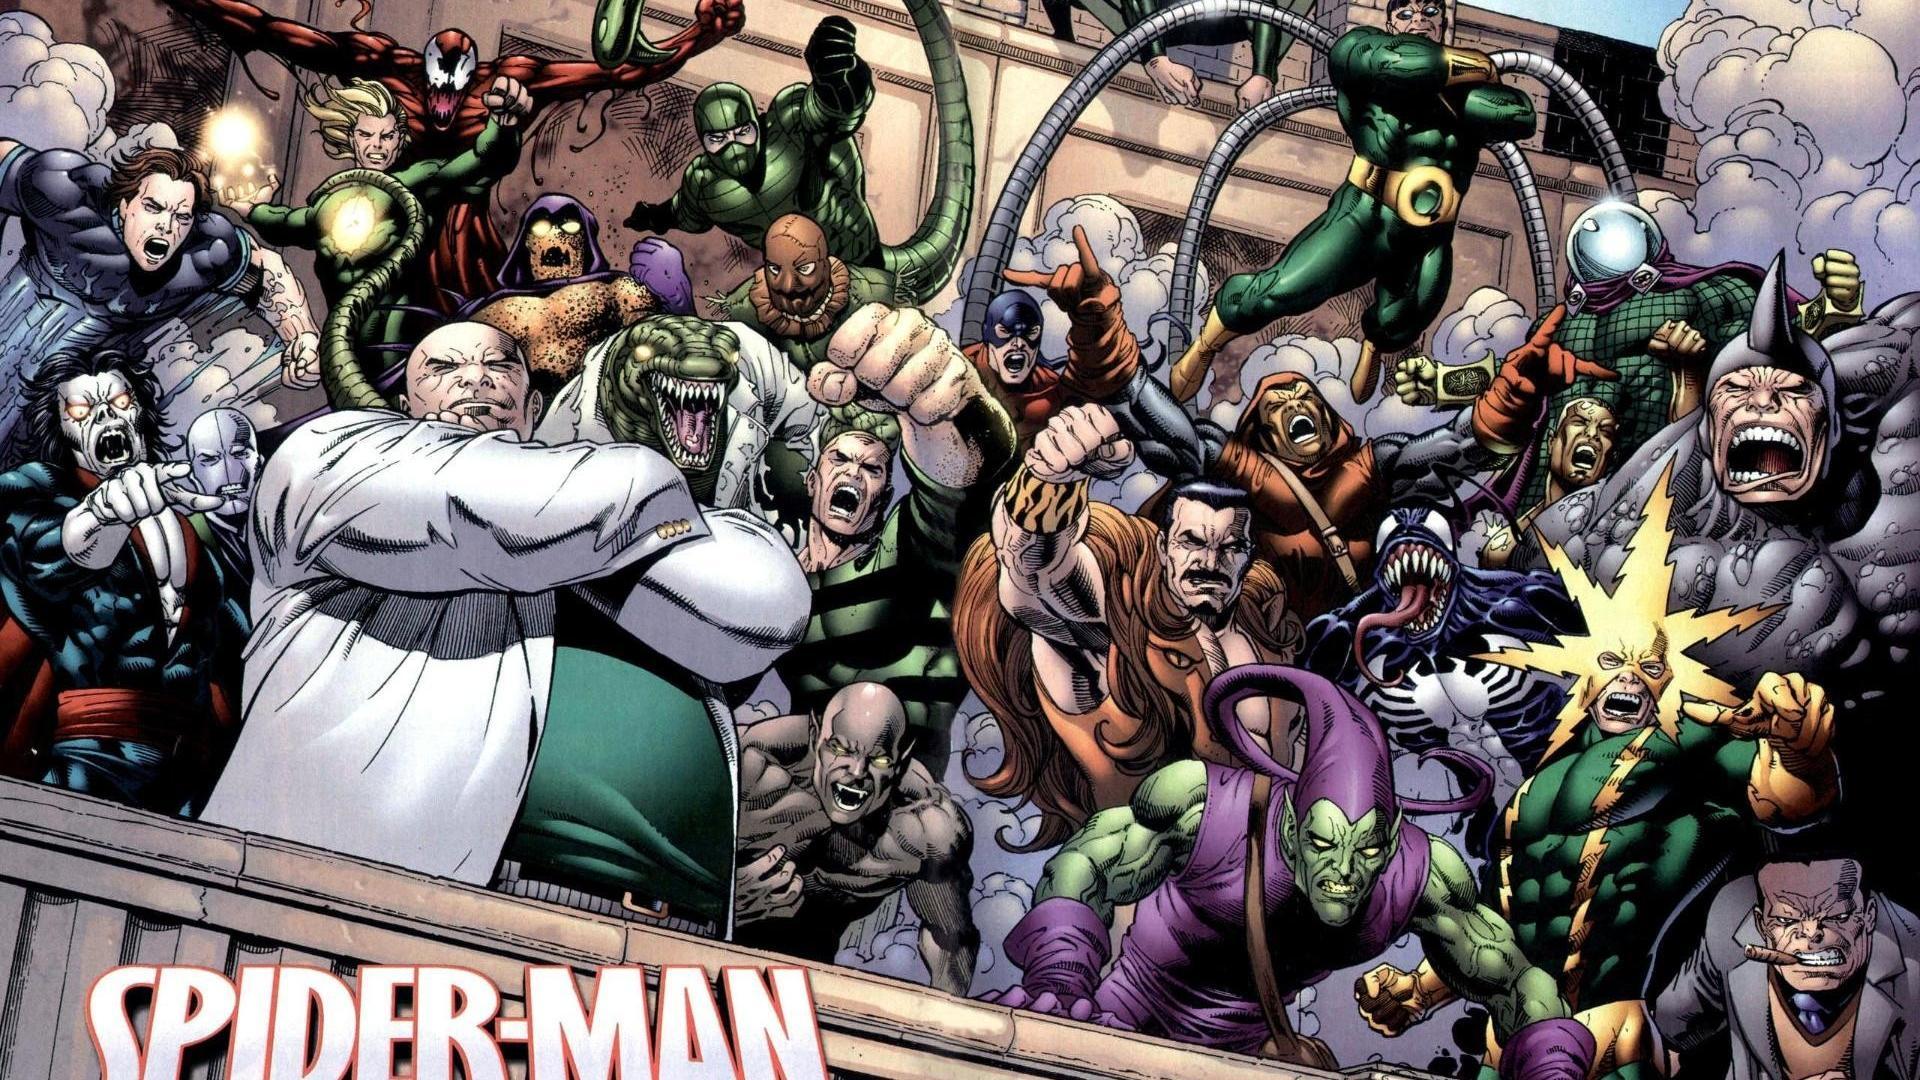 Comics Venom Spider Man Marvel Doctor Octopus Green Goblin Wallpaper